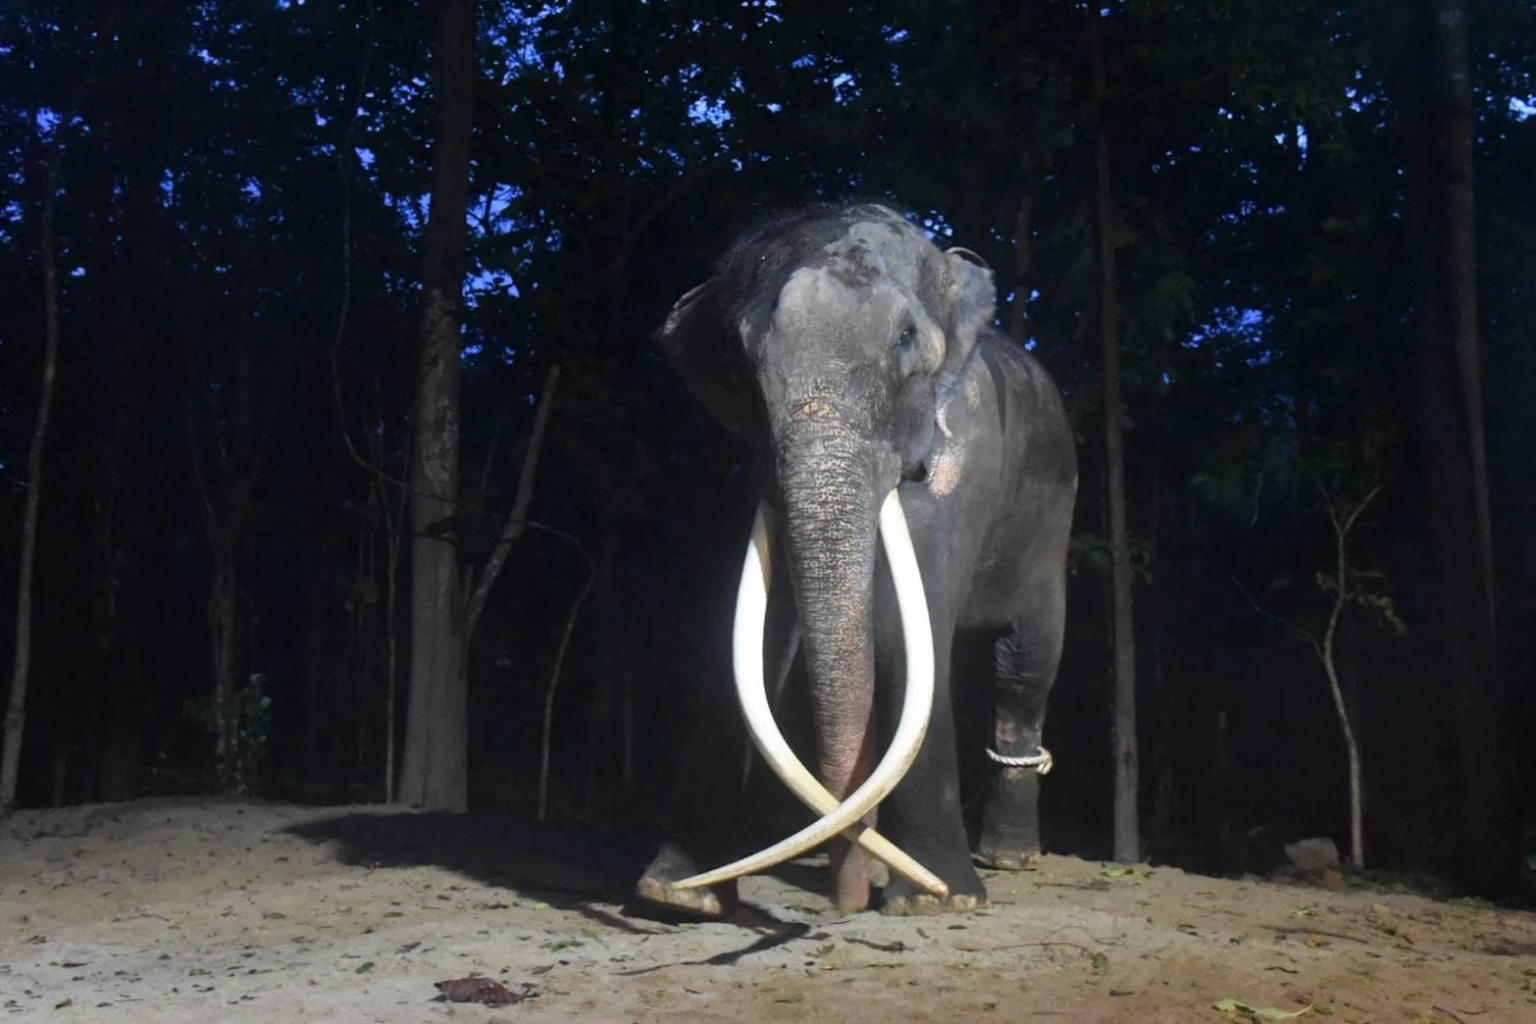 ควาญช้างเผยอาการ พลายศักดิ์สุรินทร์ หลังกลับสู่อ้อมกอดประเทศไทยคืนแรก